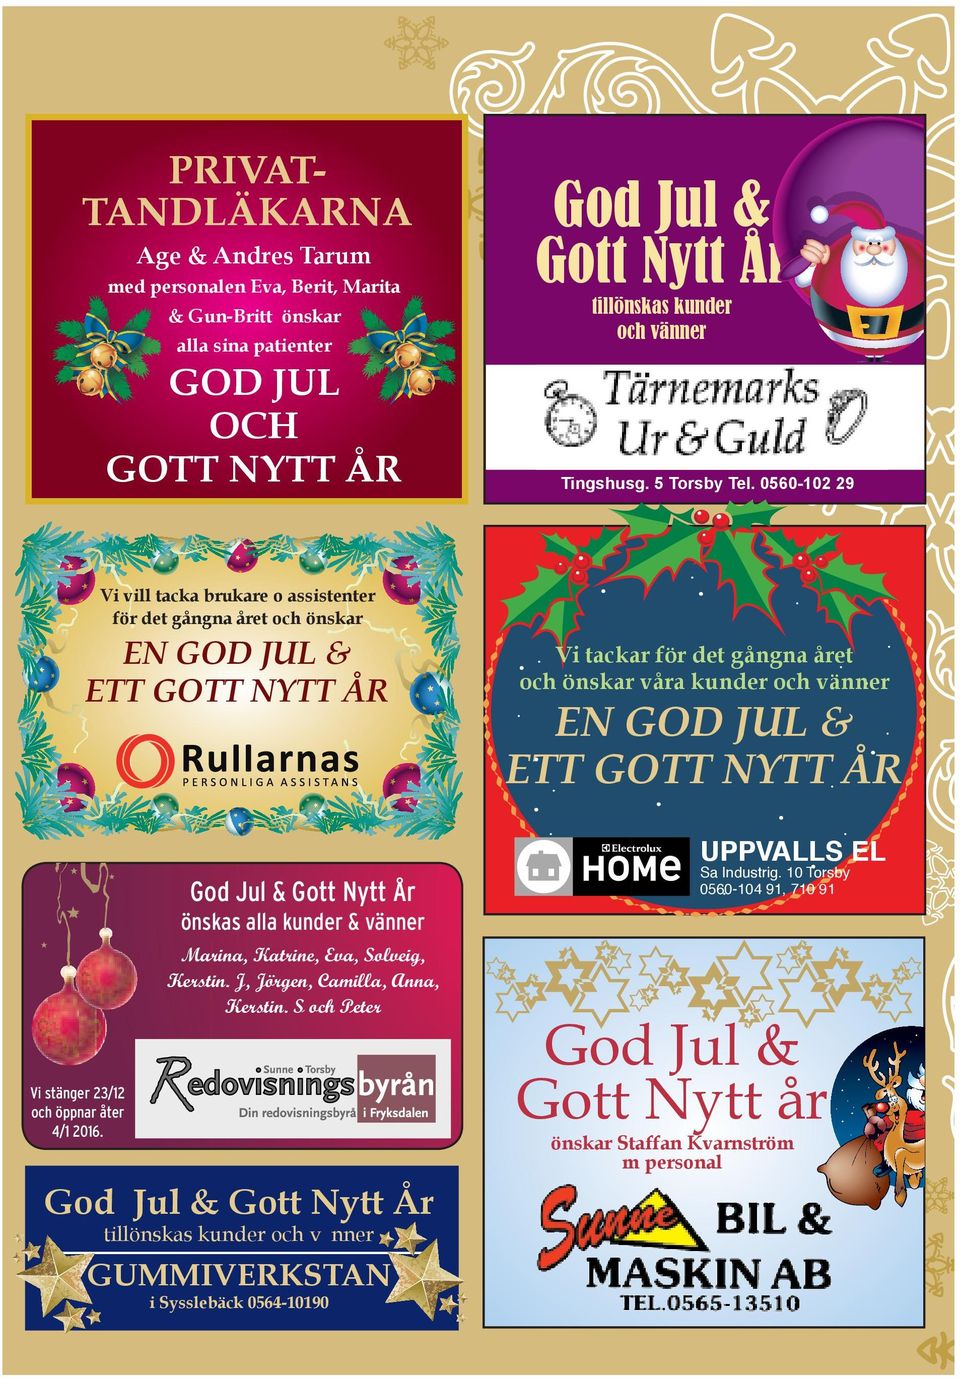 God Jul & Gott Nytt År önskas alla kunder & vänner Marina, Katrine, Eva, Solveig, Kerstin.